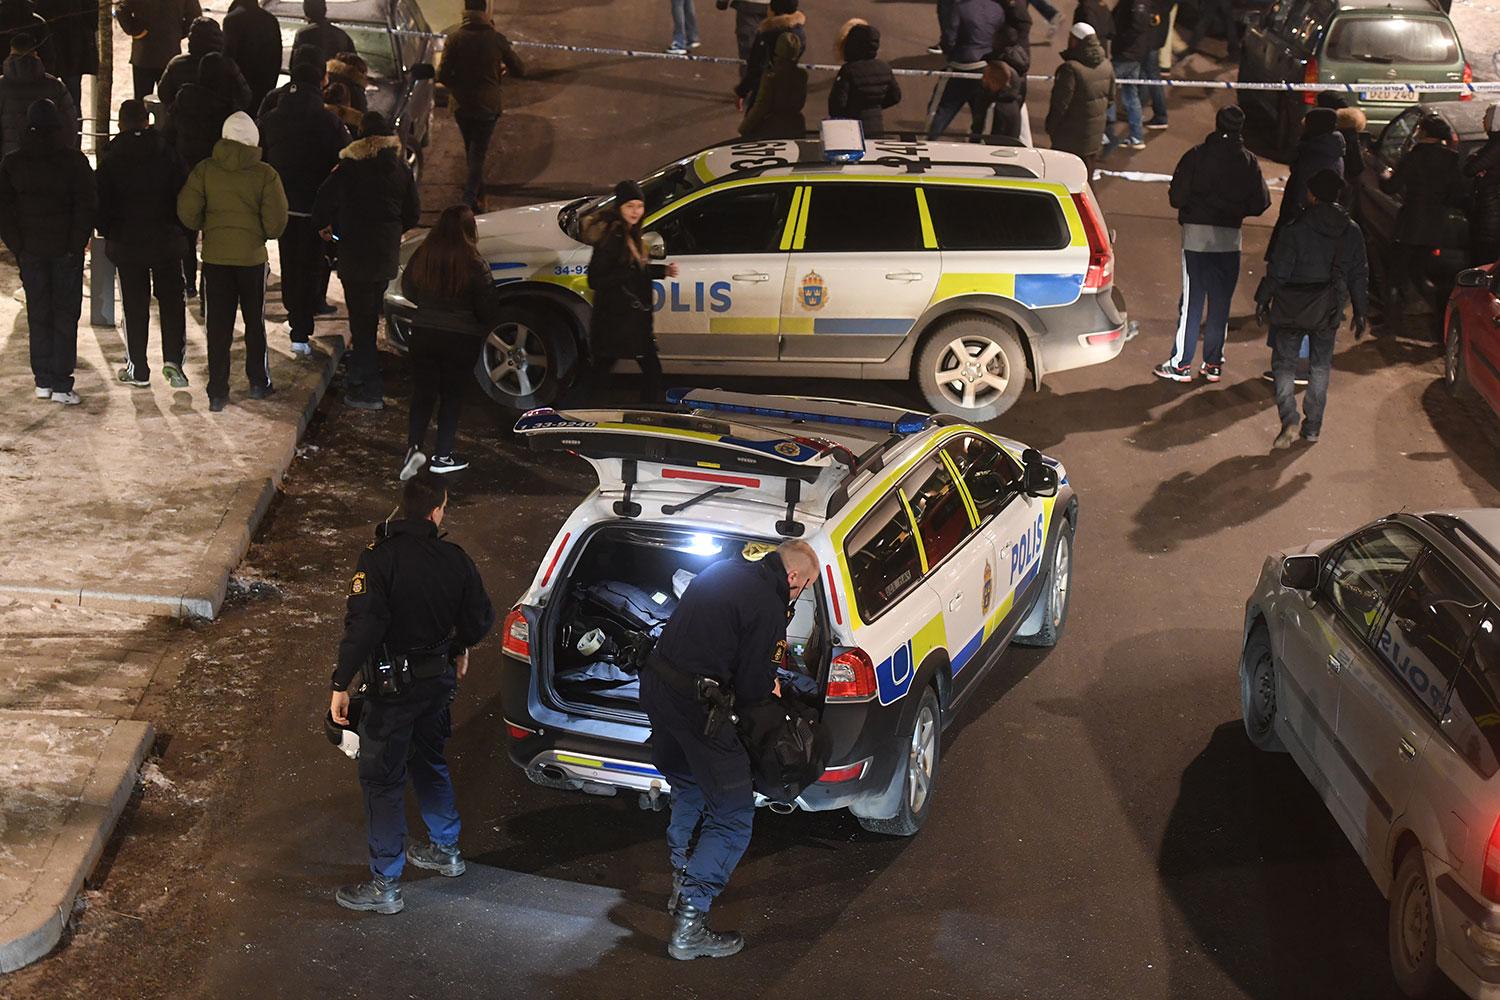 Polis och folksamling vid mordplatsen i Rinkeby.